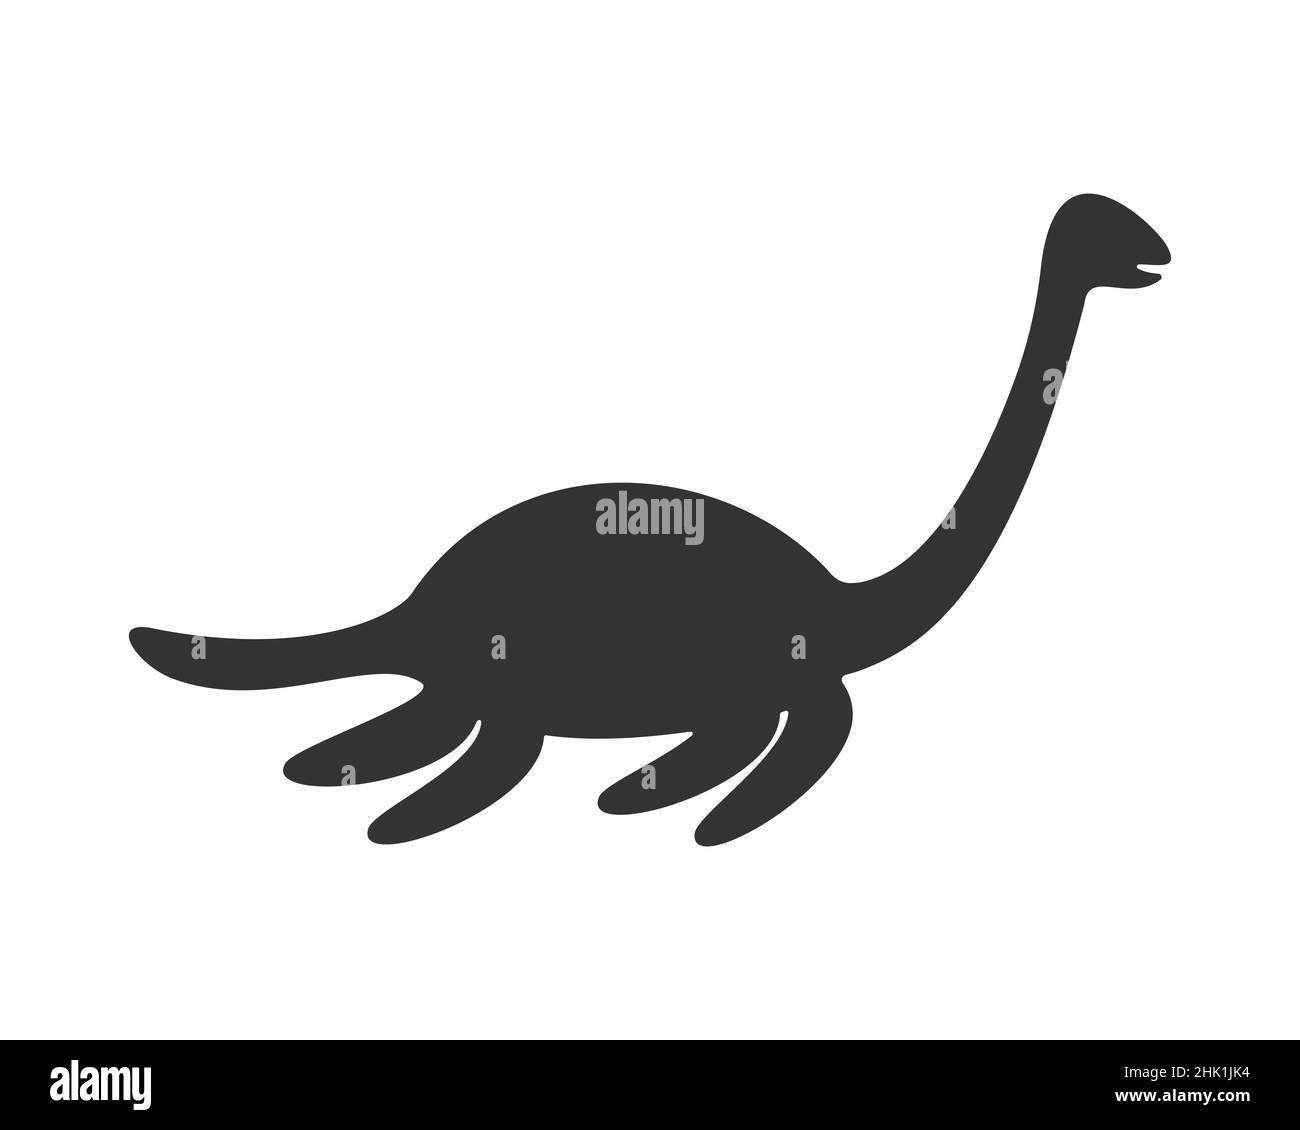 Nessie o Loch Ness silhouette mostro. Creatura famosa nel folklore scozzese. Icona del plesiosauro dei dinosauri isolata su sfondo bianco. Illustrazione grafica vettoriale Illustrazione Vettoriale